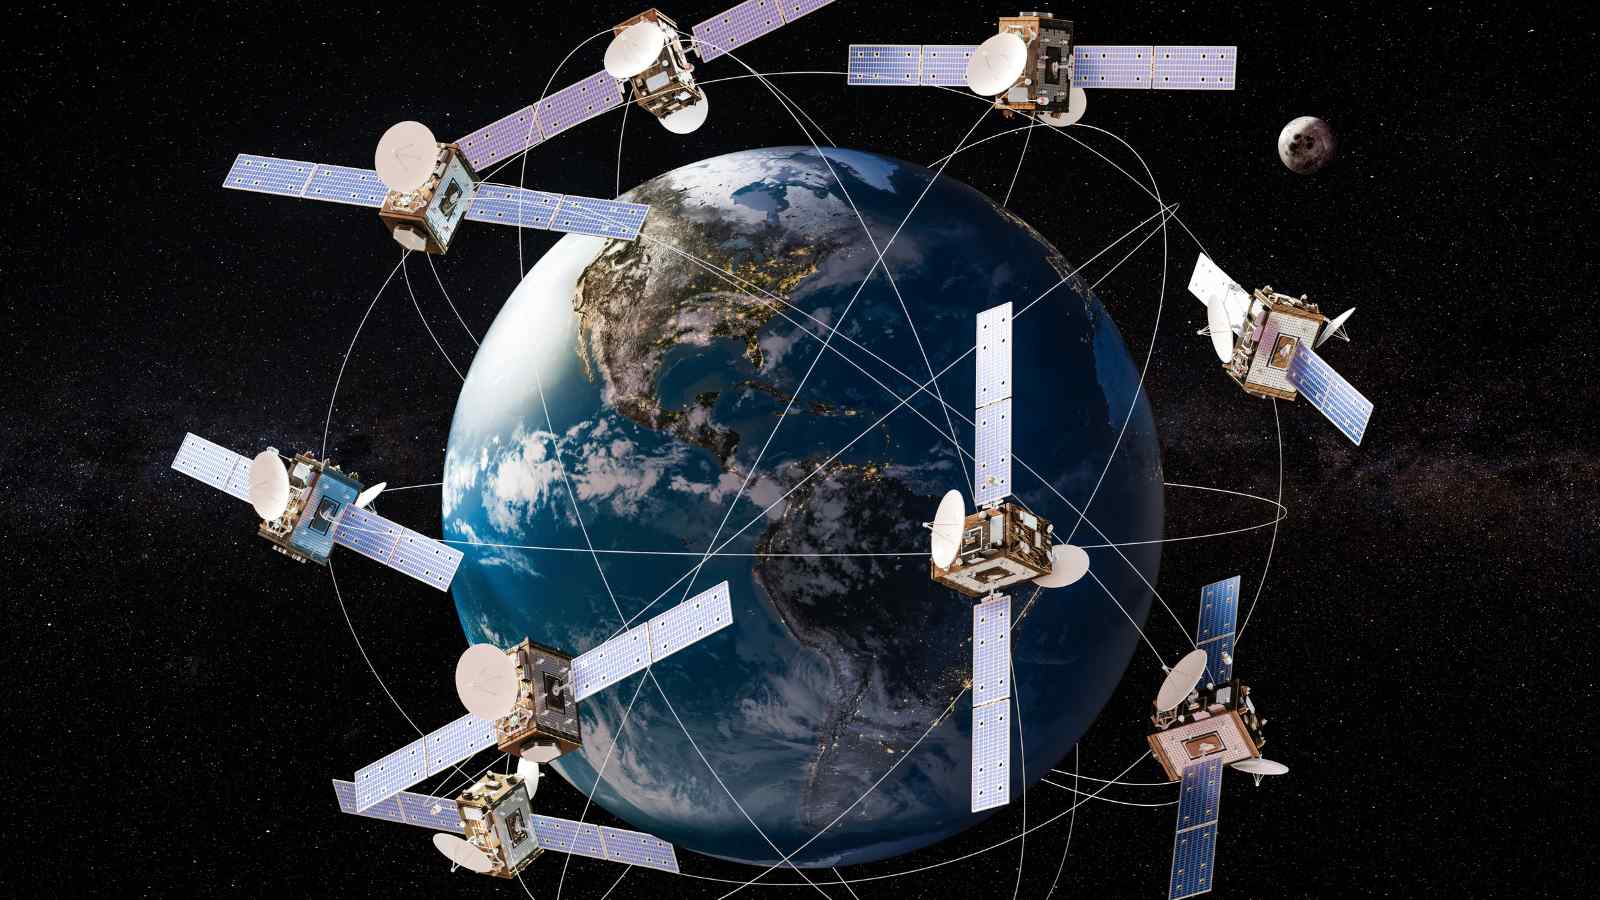 Starlink ha tolto inaspettatamente l'opzione di noleggio per il suo sistema satellitare